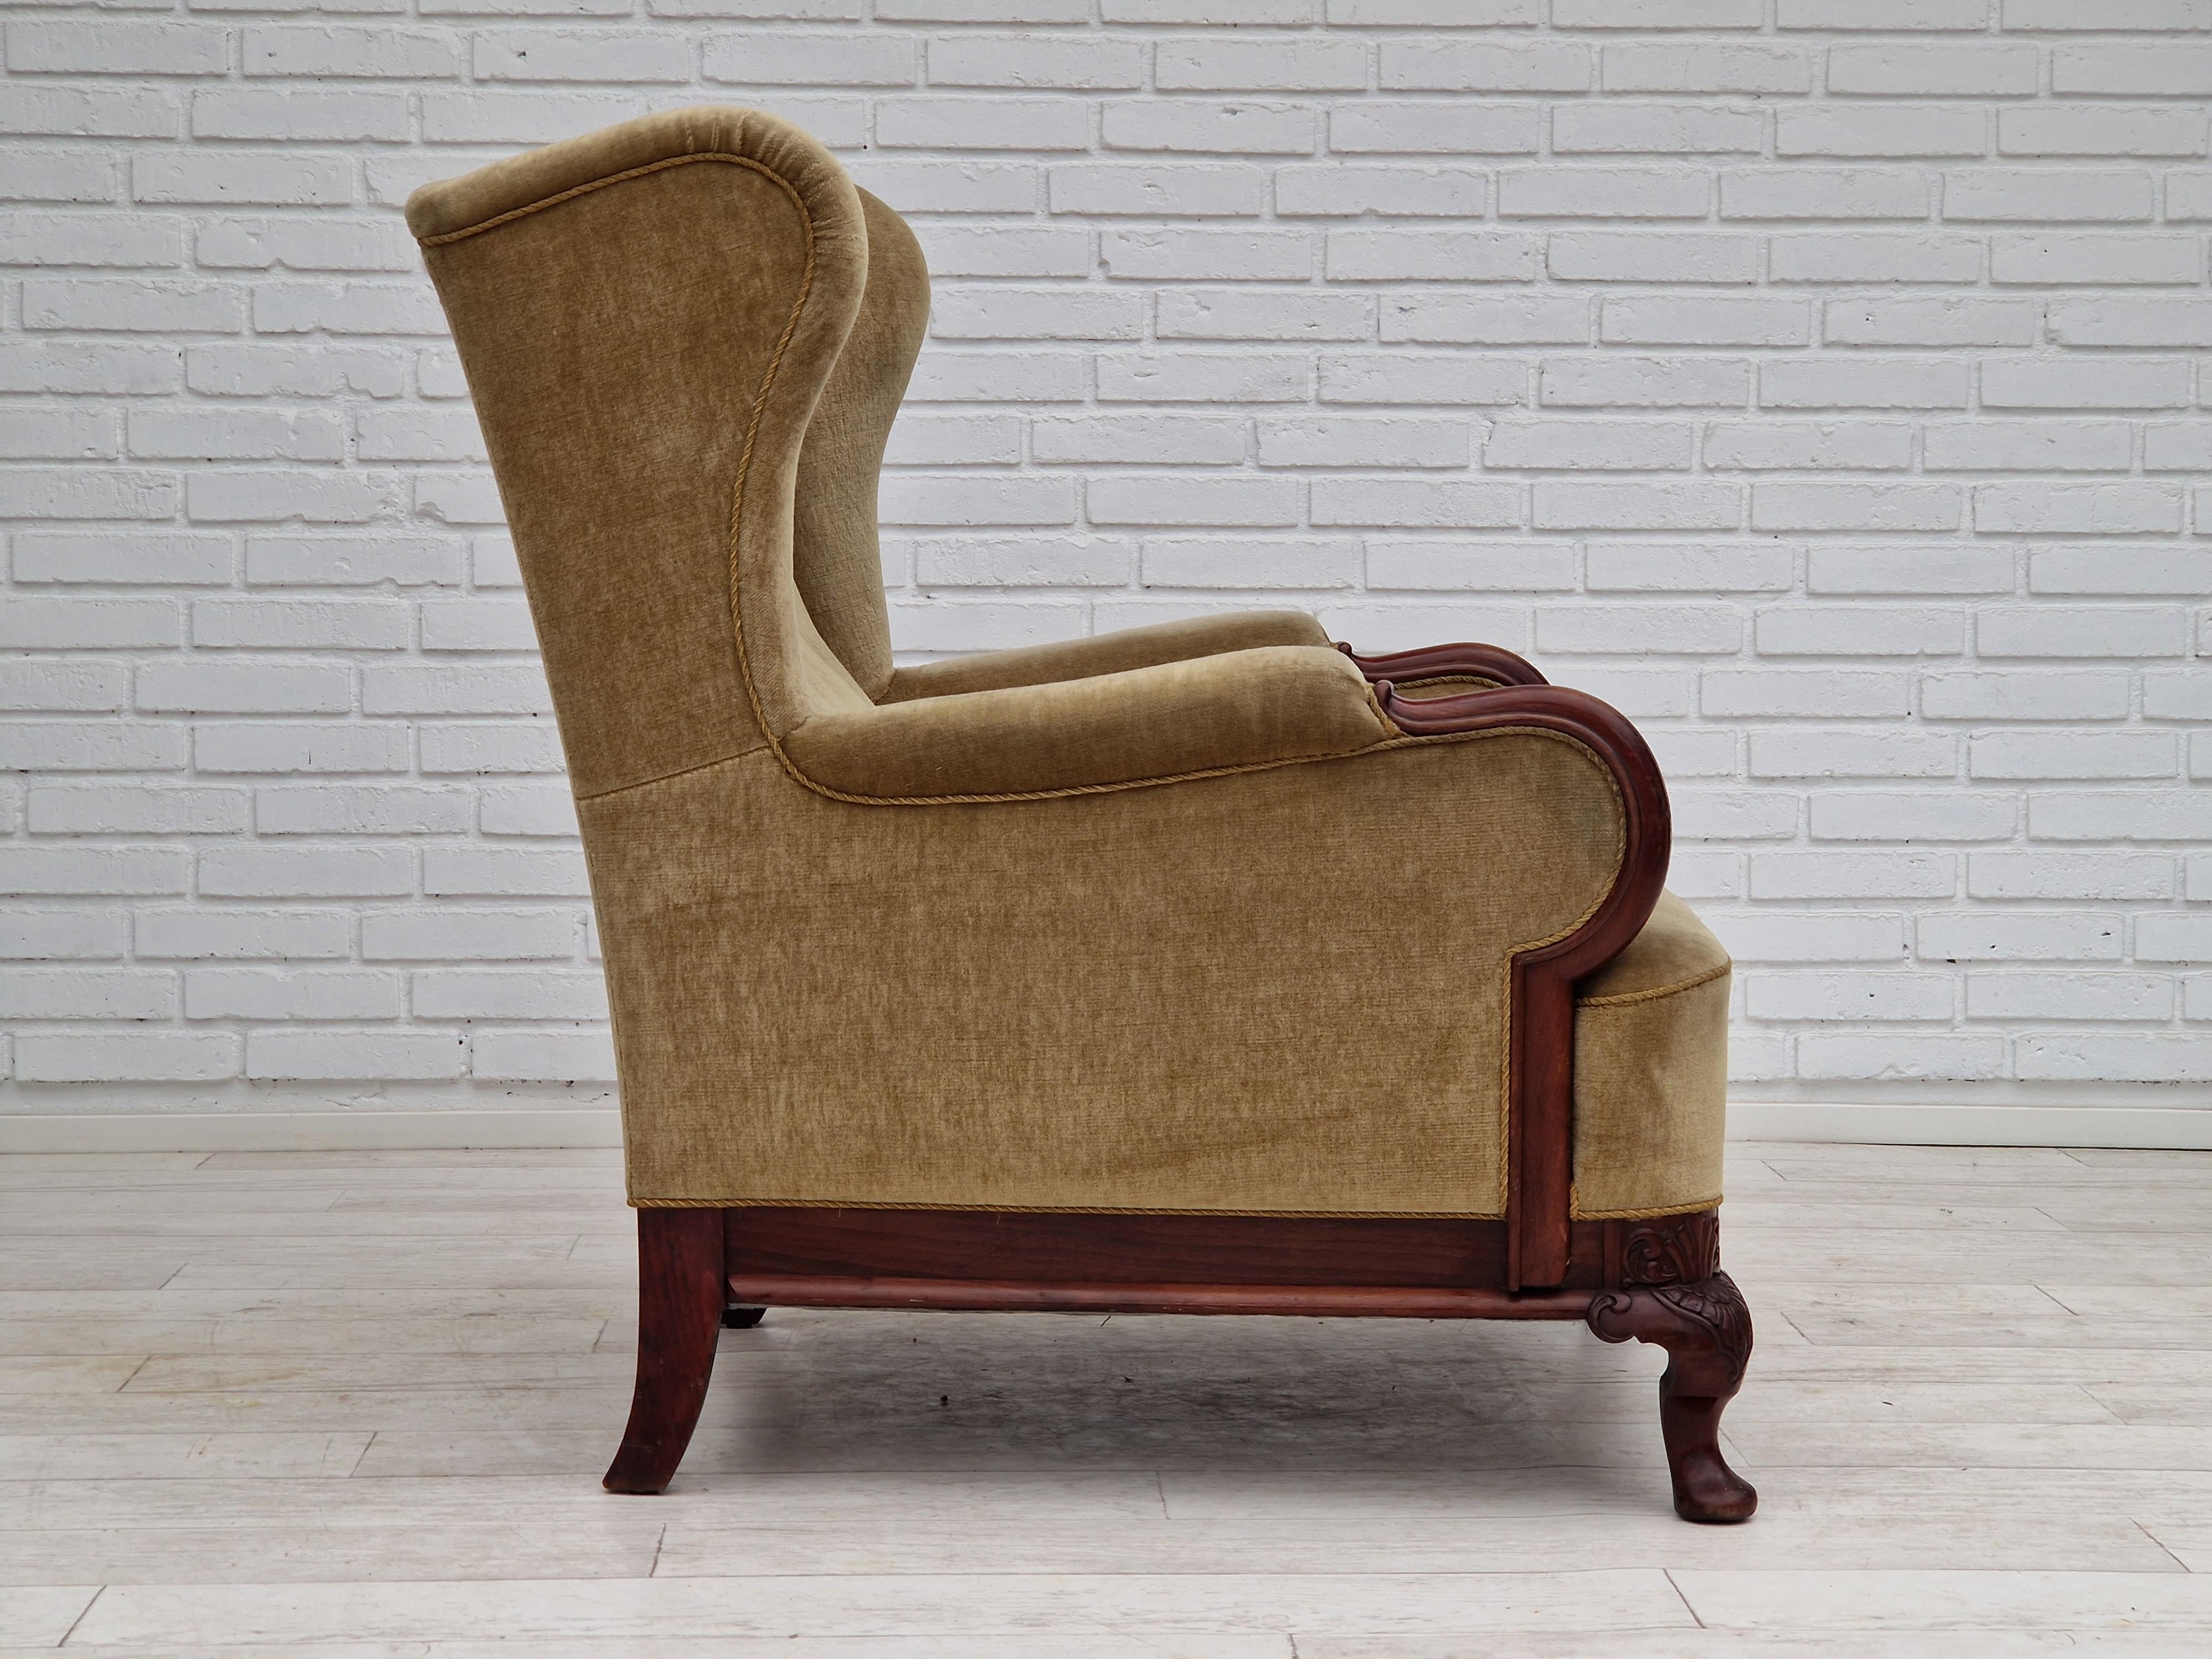 Mid-20th Century 1950s, Danish Design, Armchair, Teak Wood, Velour, Original Condition